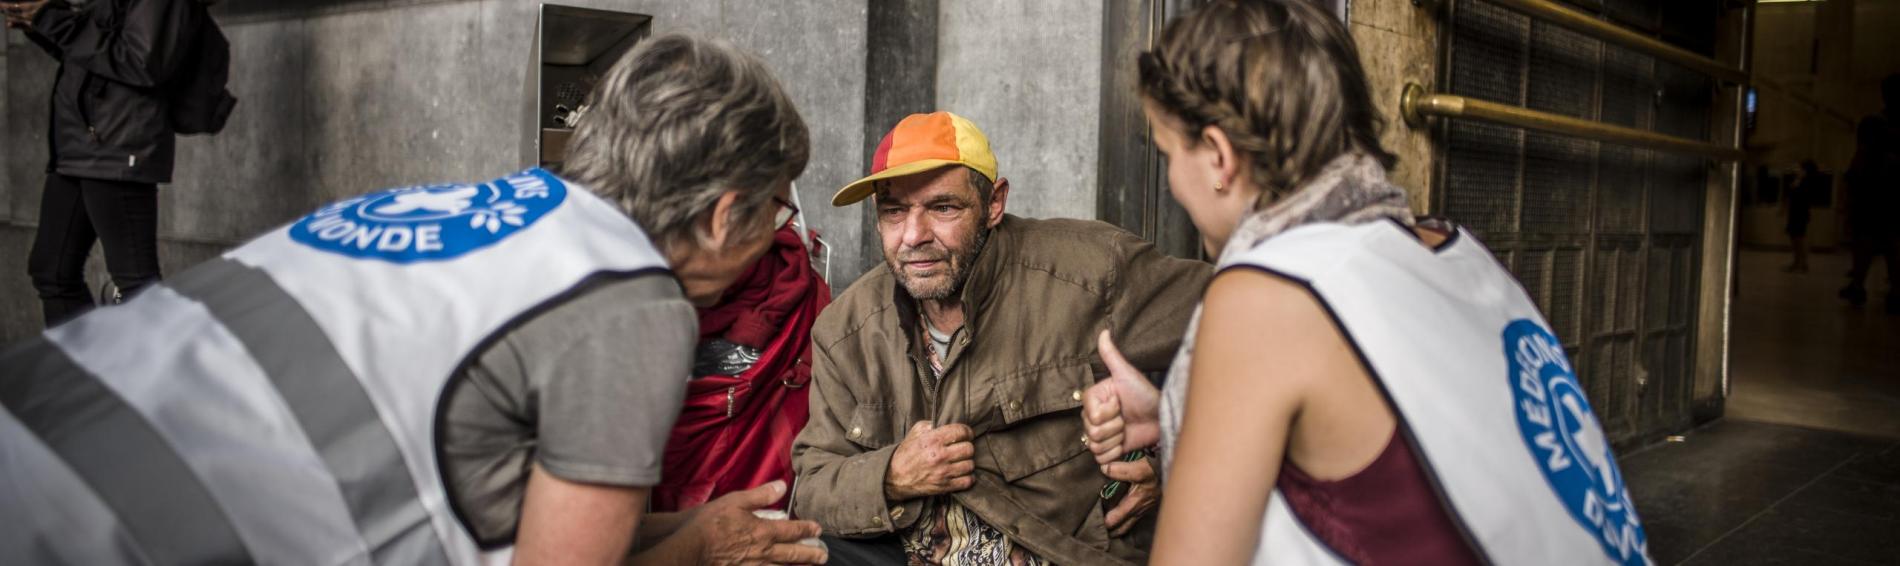 Voor het Noordstation in Brussel zitten twee medewerksters van Dokters van de Wereld gehurkt op de grond naast een dakloze man. Ze leggen hem uit wat onze organisatie voor hem kan doen. 